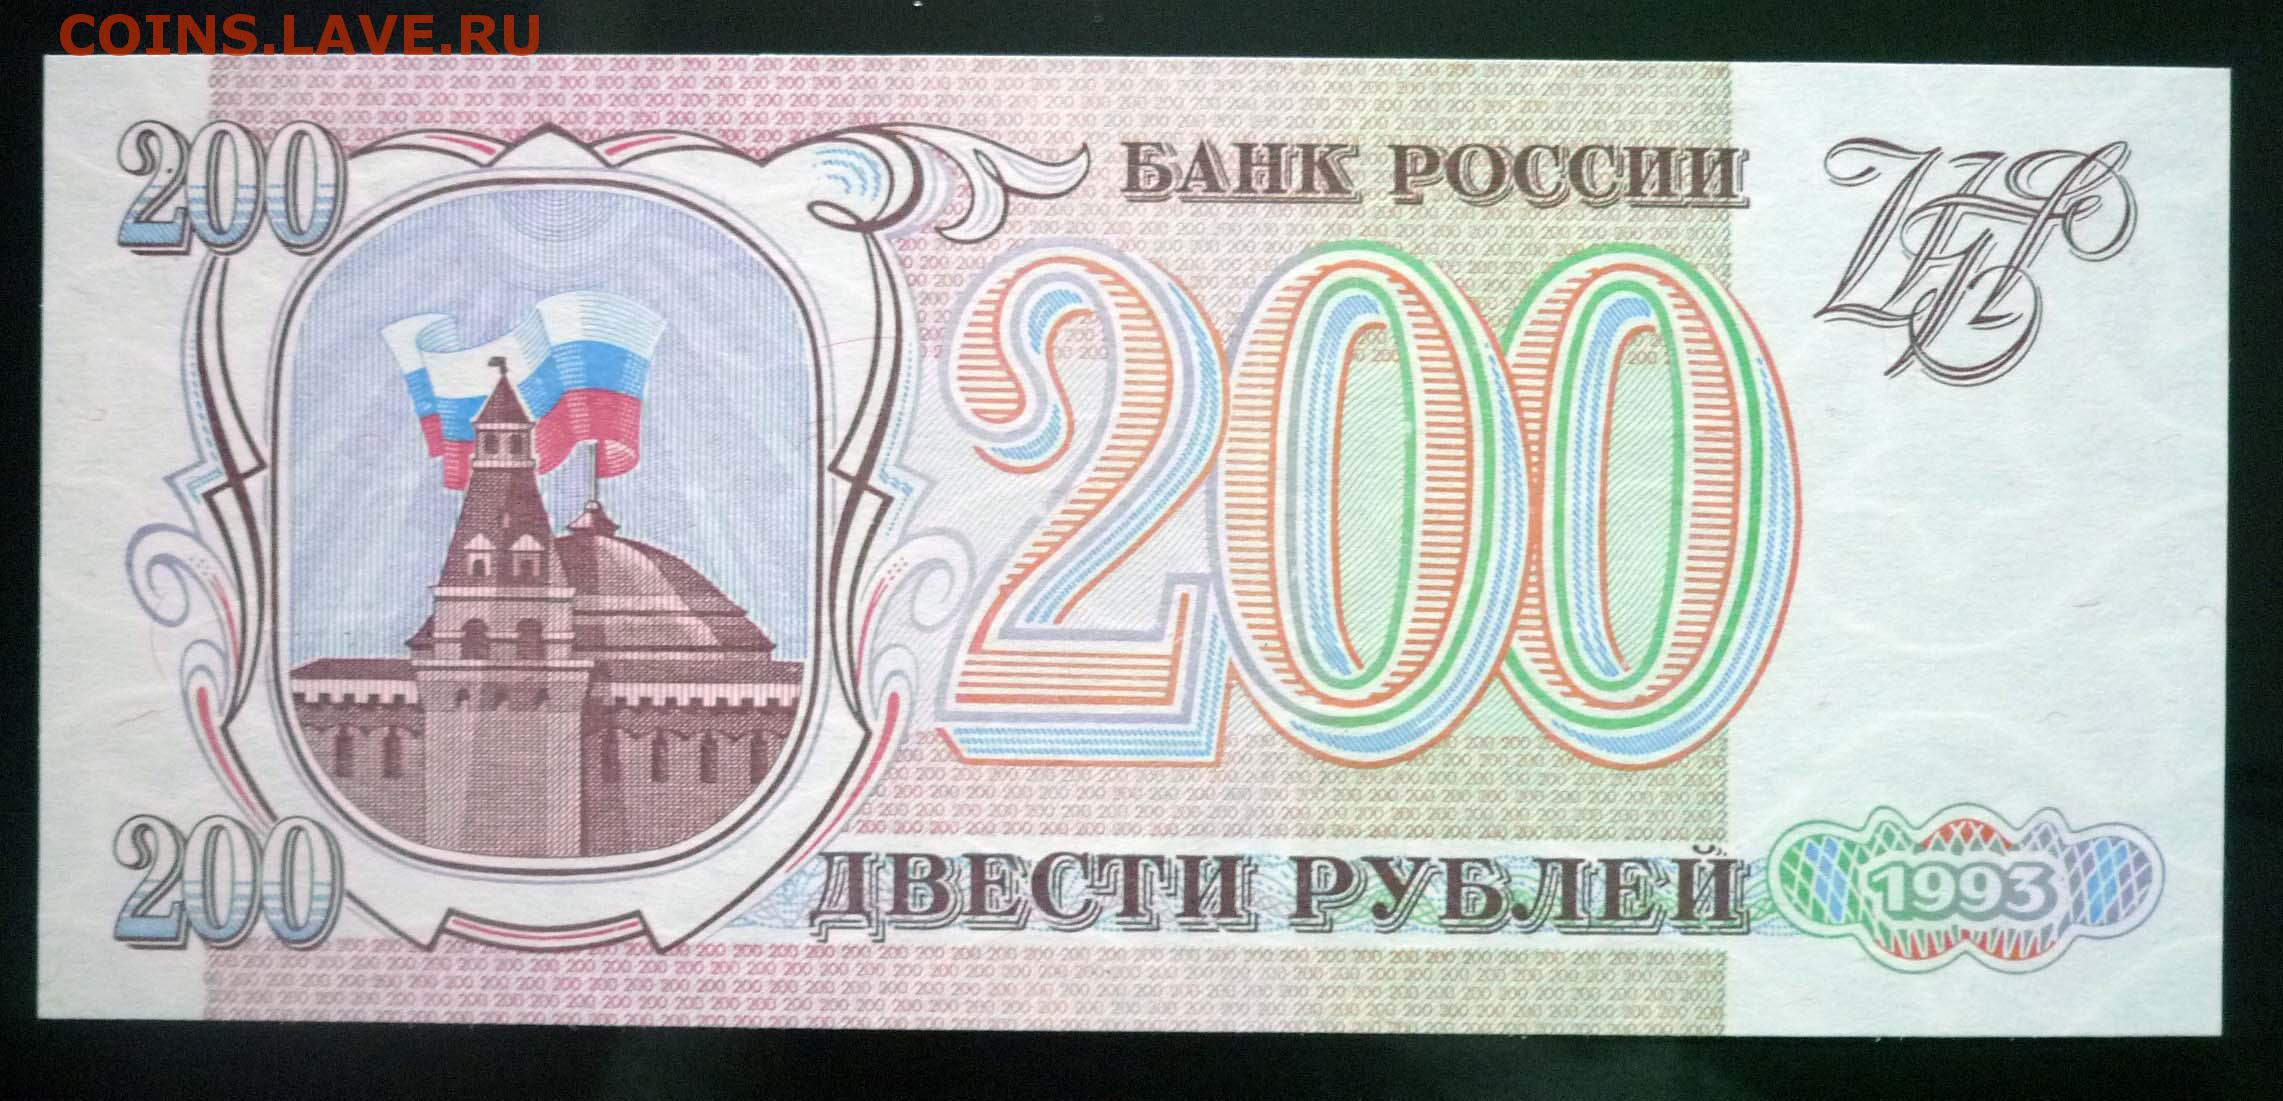 18 200 в рублях. 200 Рублей 1993. Купюра 200 рублей 1993. Банкнота 200 рублей 1993. Двести рублей купюра 1993.